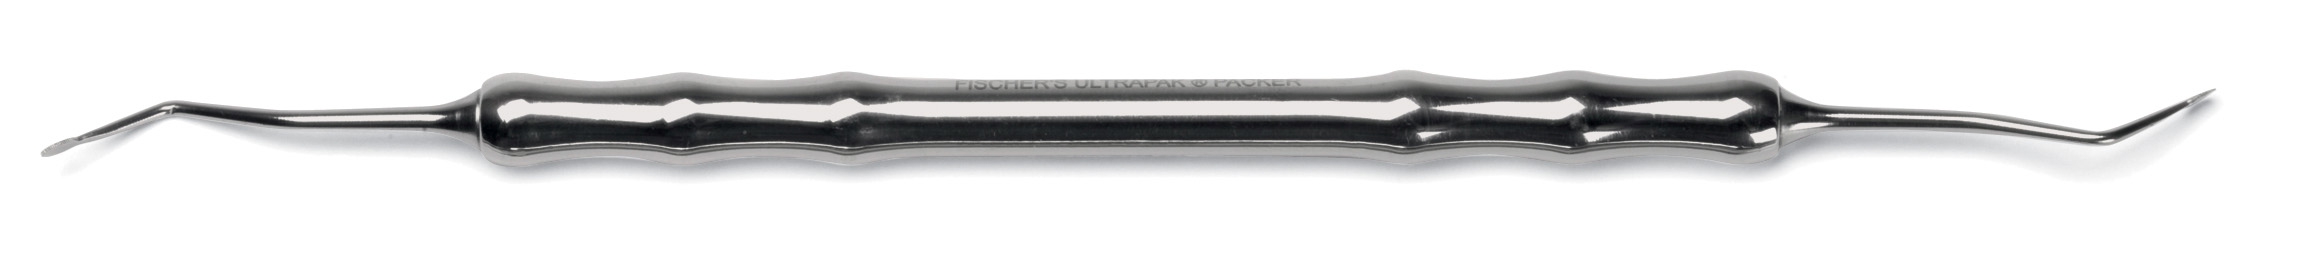 Insert-fils Ultrapak du Dr Fischer  Ultradent 165755